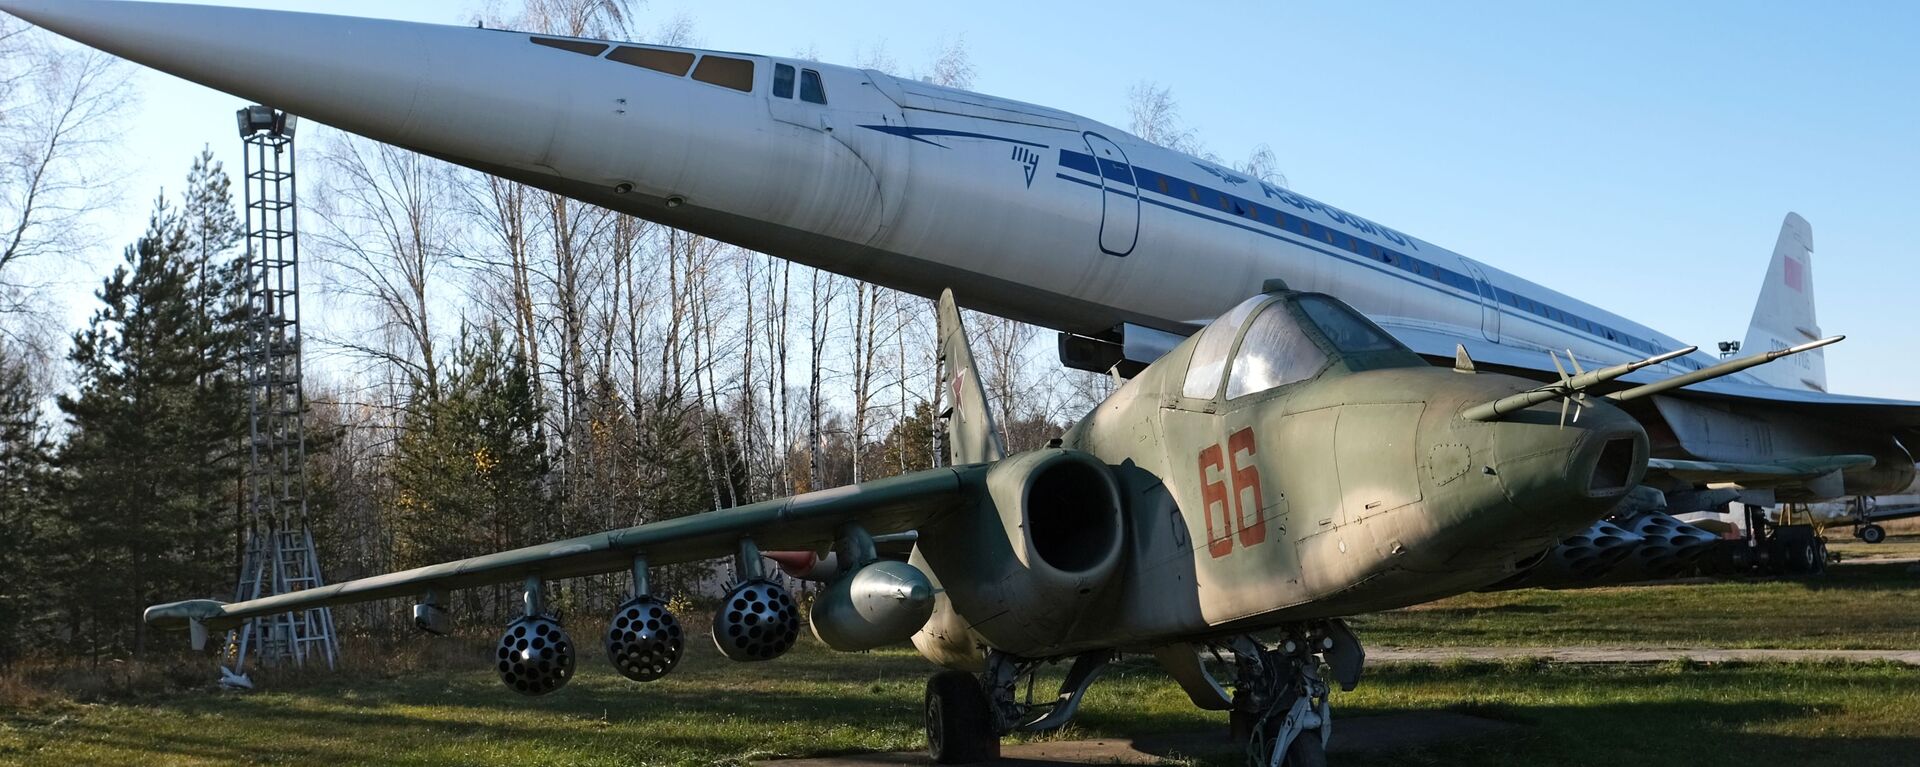 Tu-144 và Su-25 trong Bảo tàng Không quân Nga tại Monino - Sputnik Việt Nam, 1920, 18.01.2022